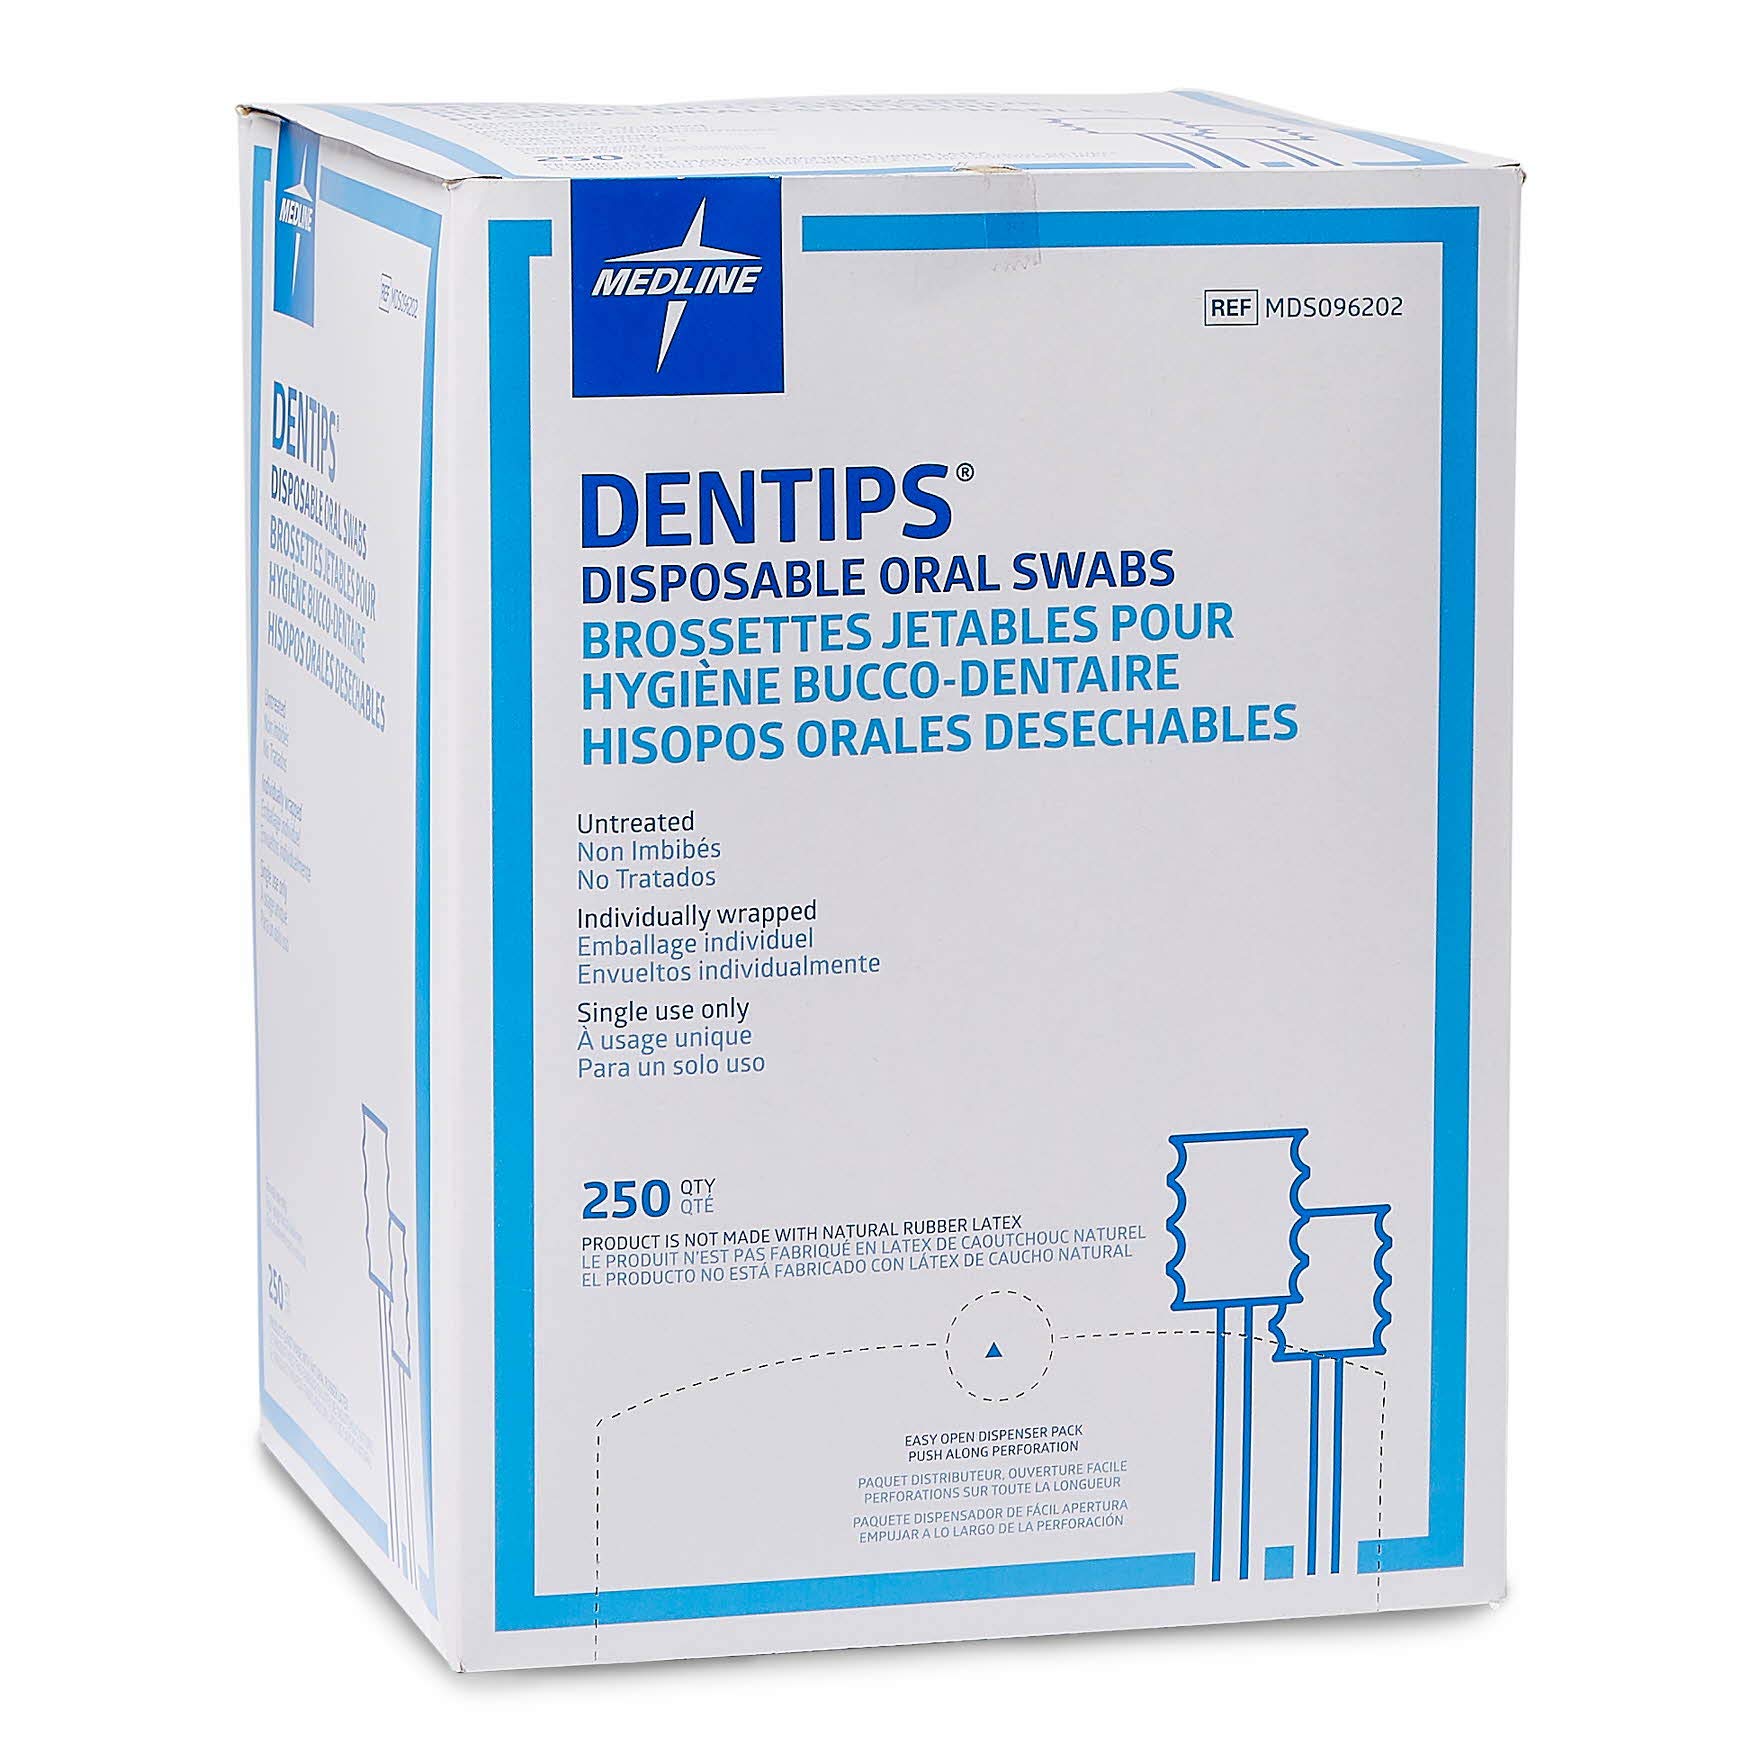 Medline Dentips Disposable Oral Swabsticks, Adult Untreated, Blue, 500 Count